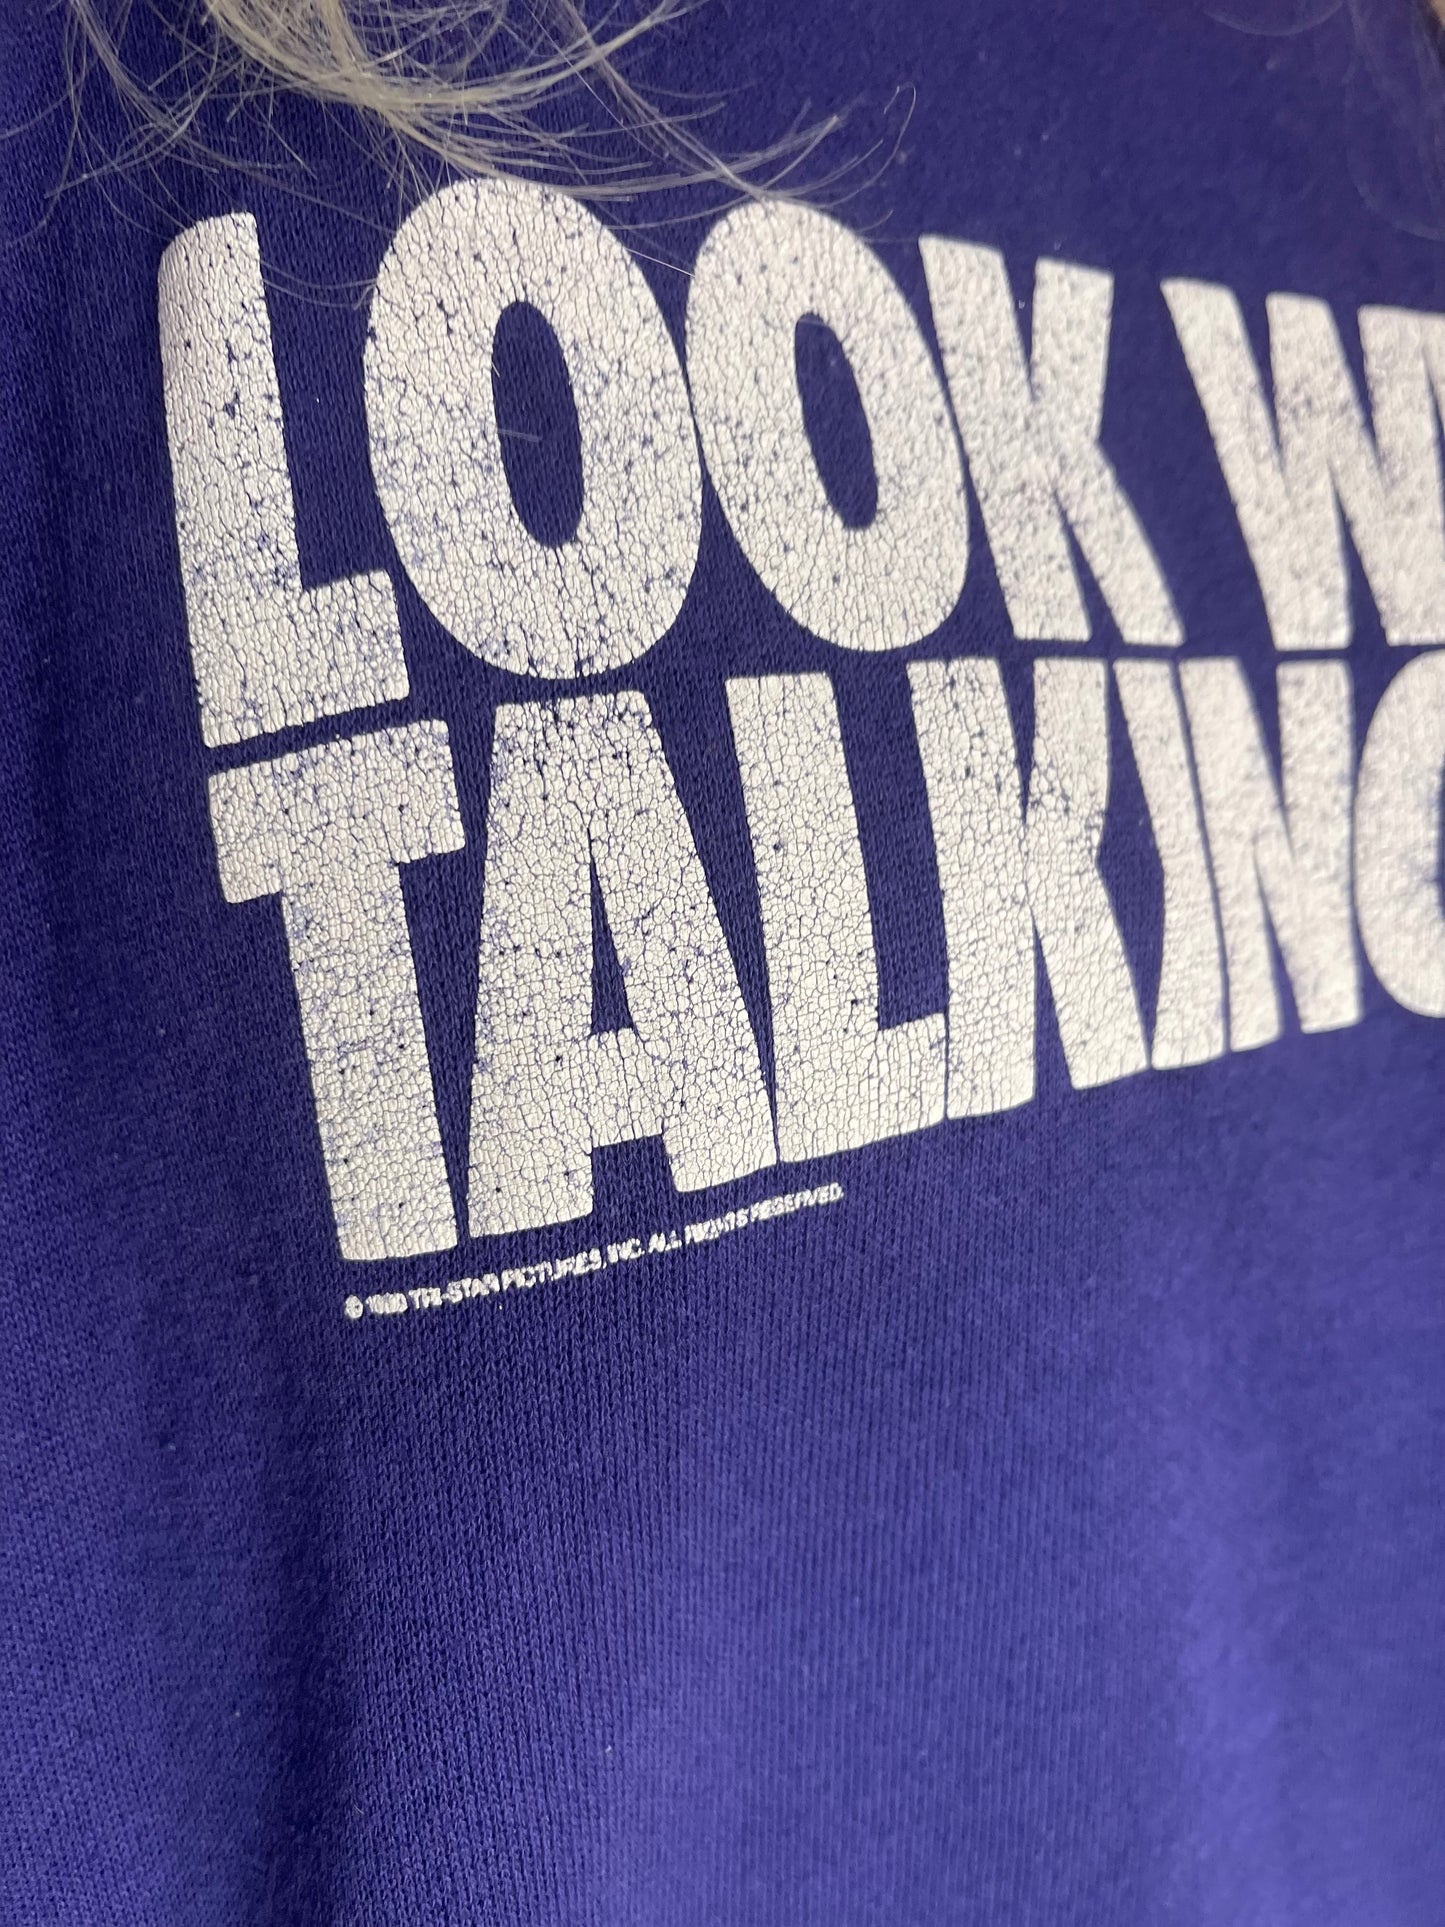 Vintage 1990 Look Who’s Talking Too Sweatshirt